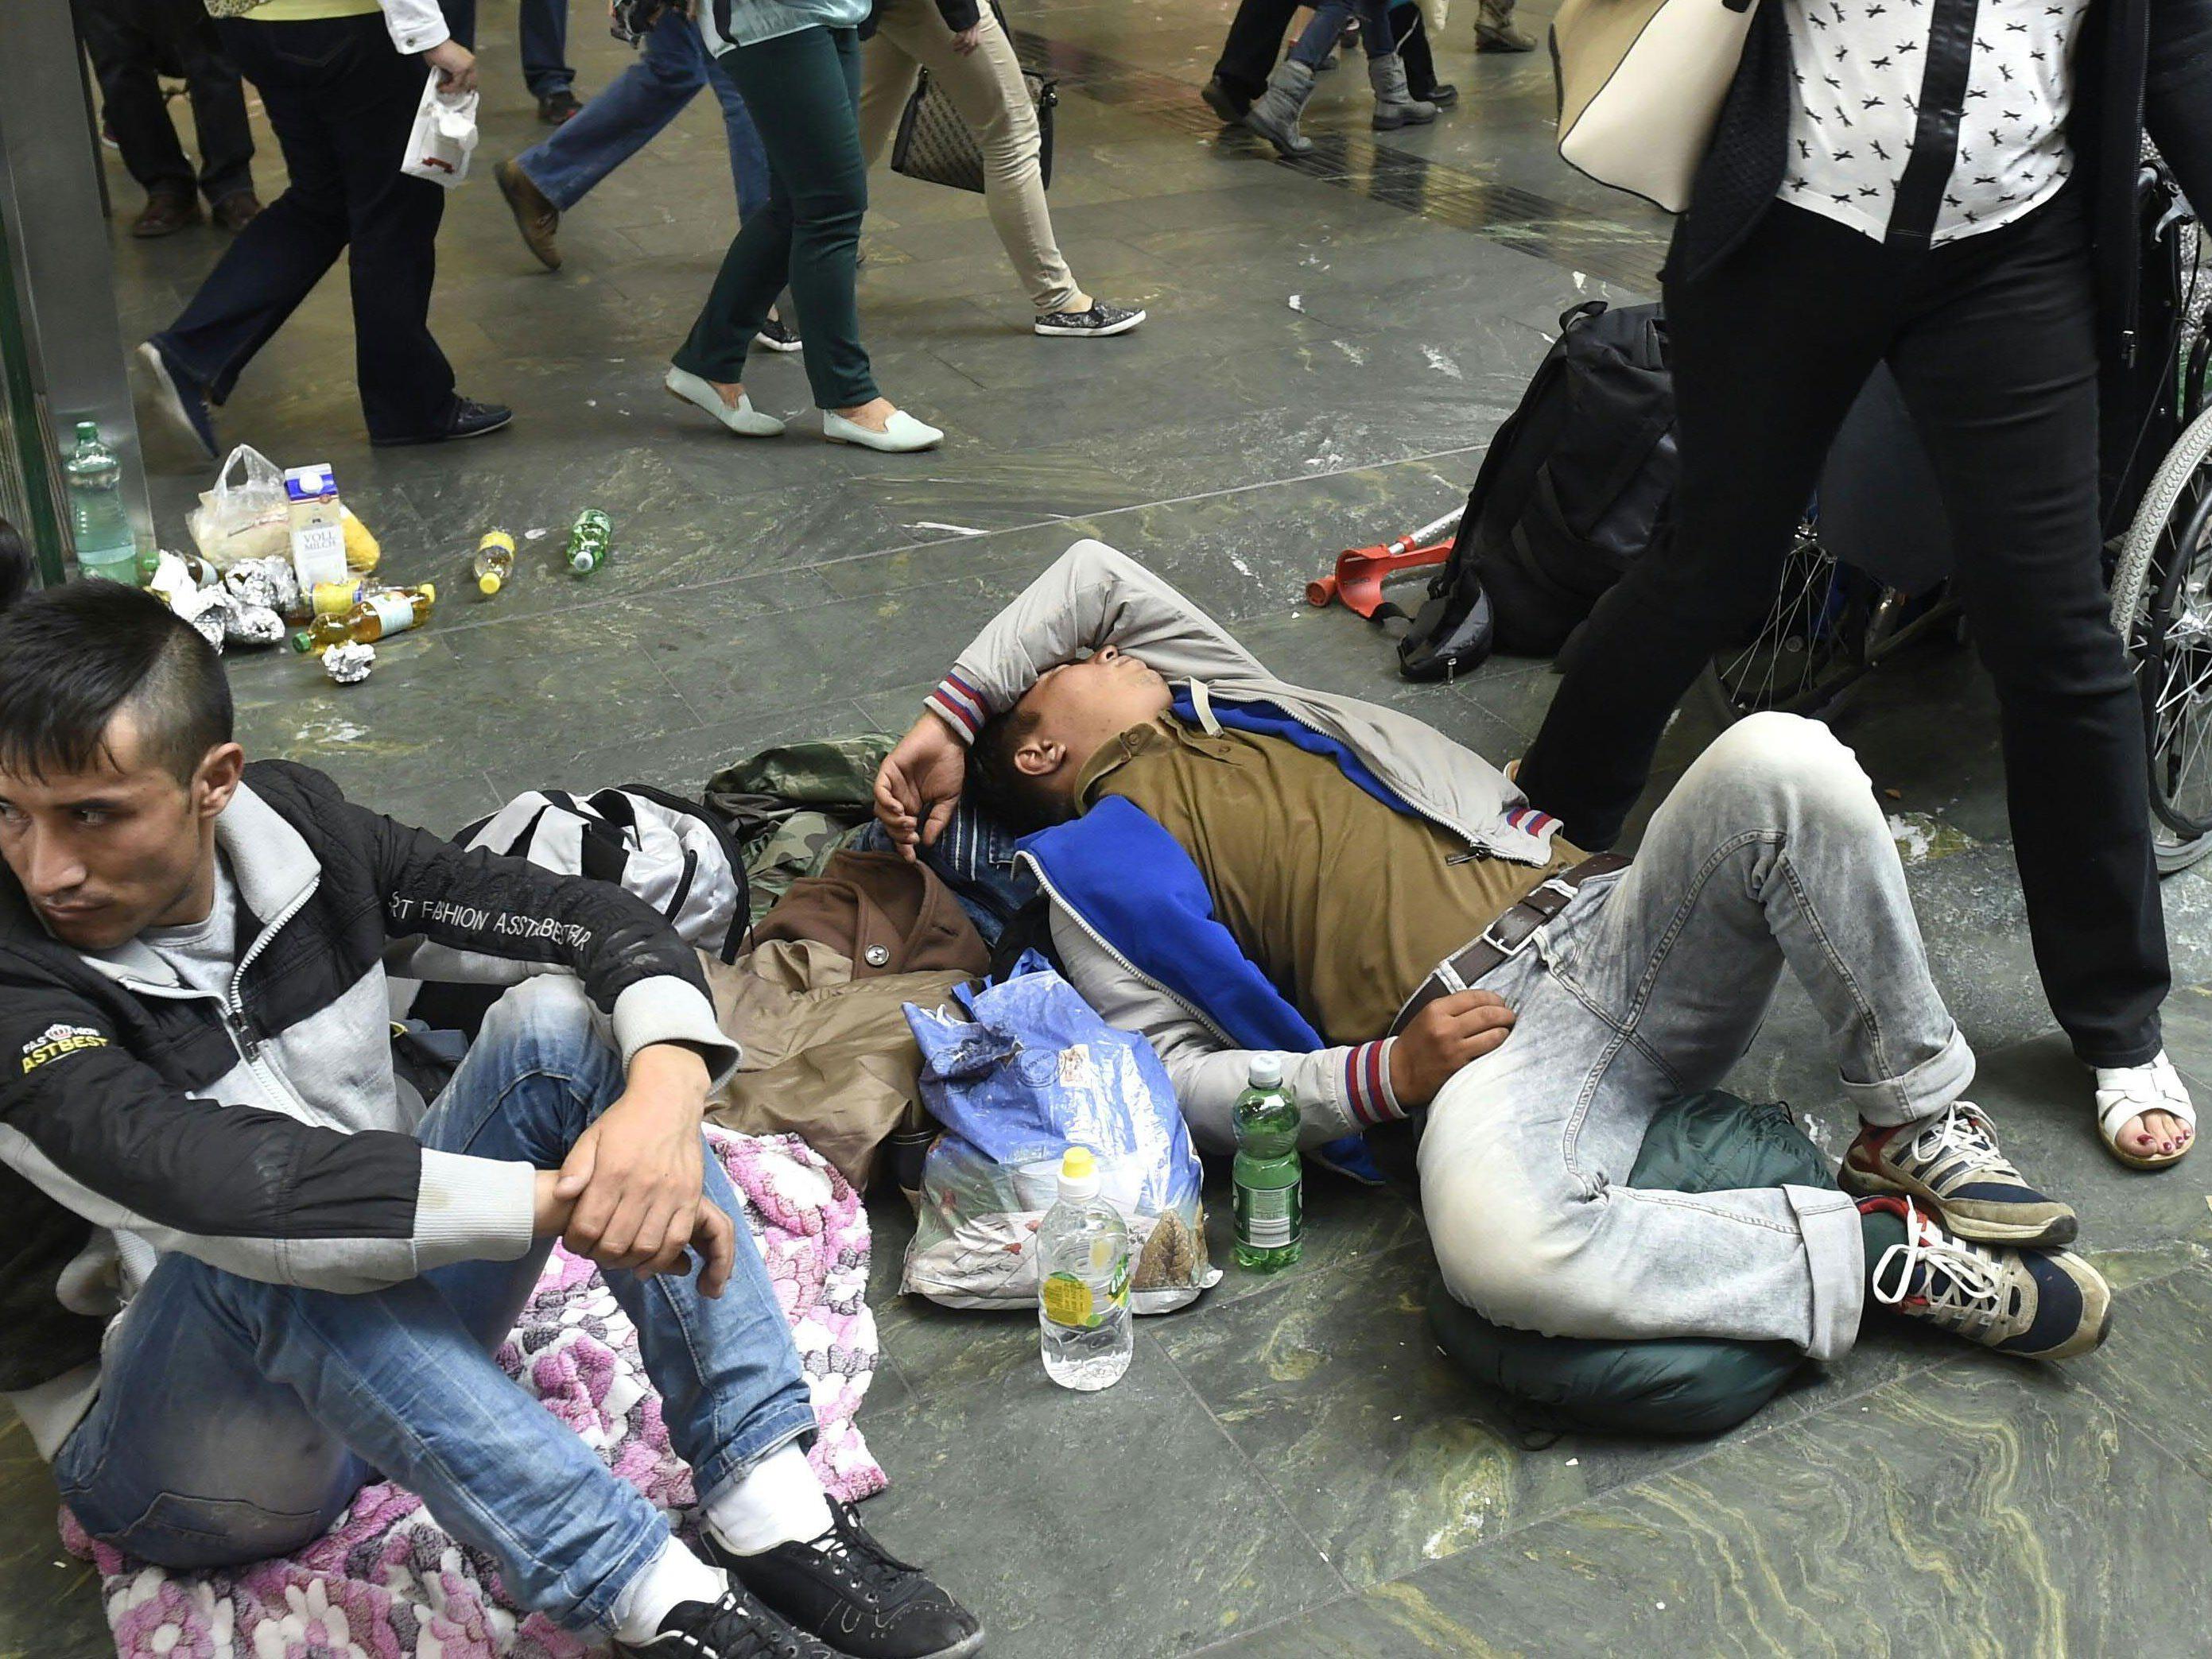 Erschöpfte Flüchtlinge am Bahnhofsboden.